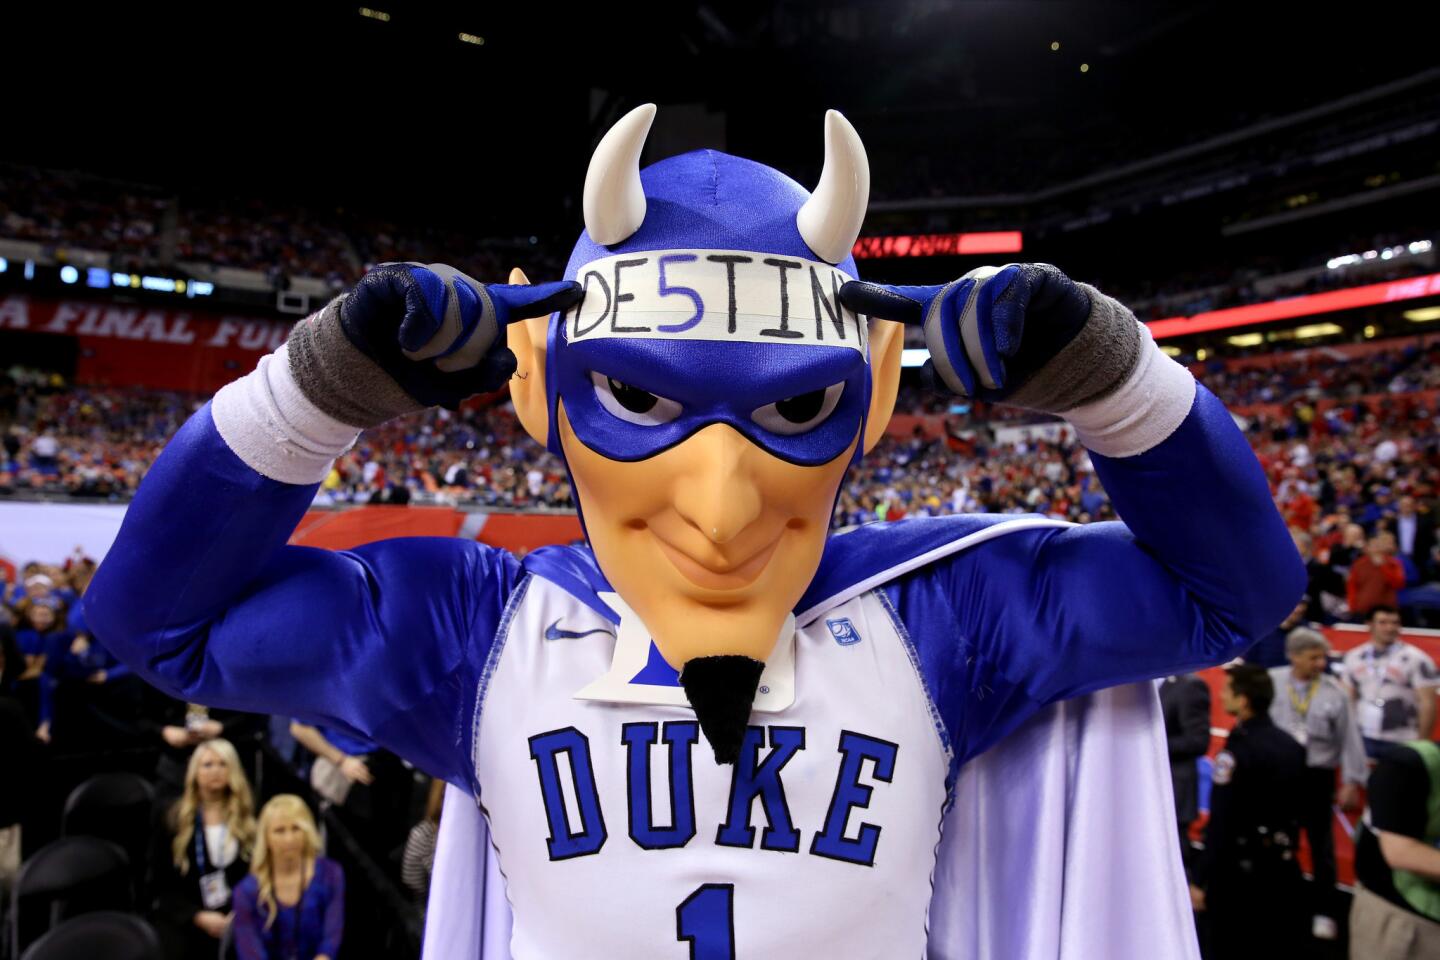 Duke mascot